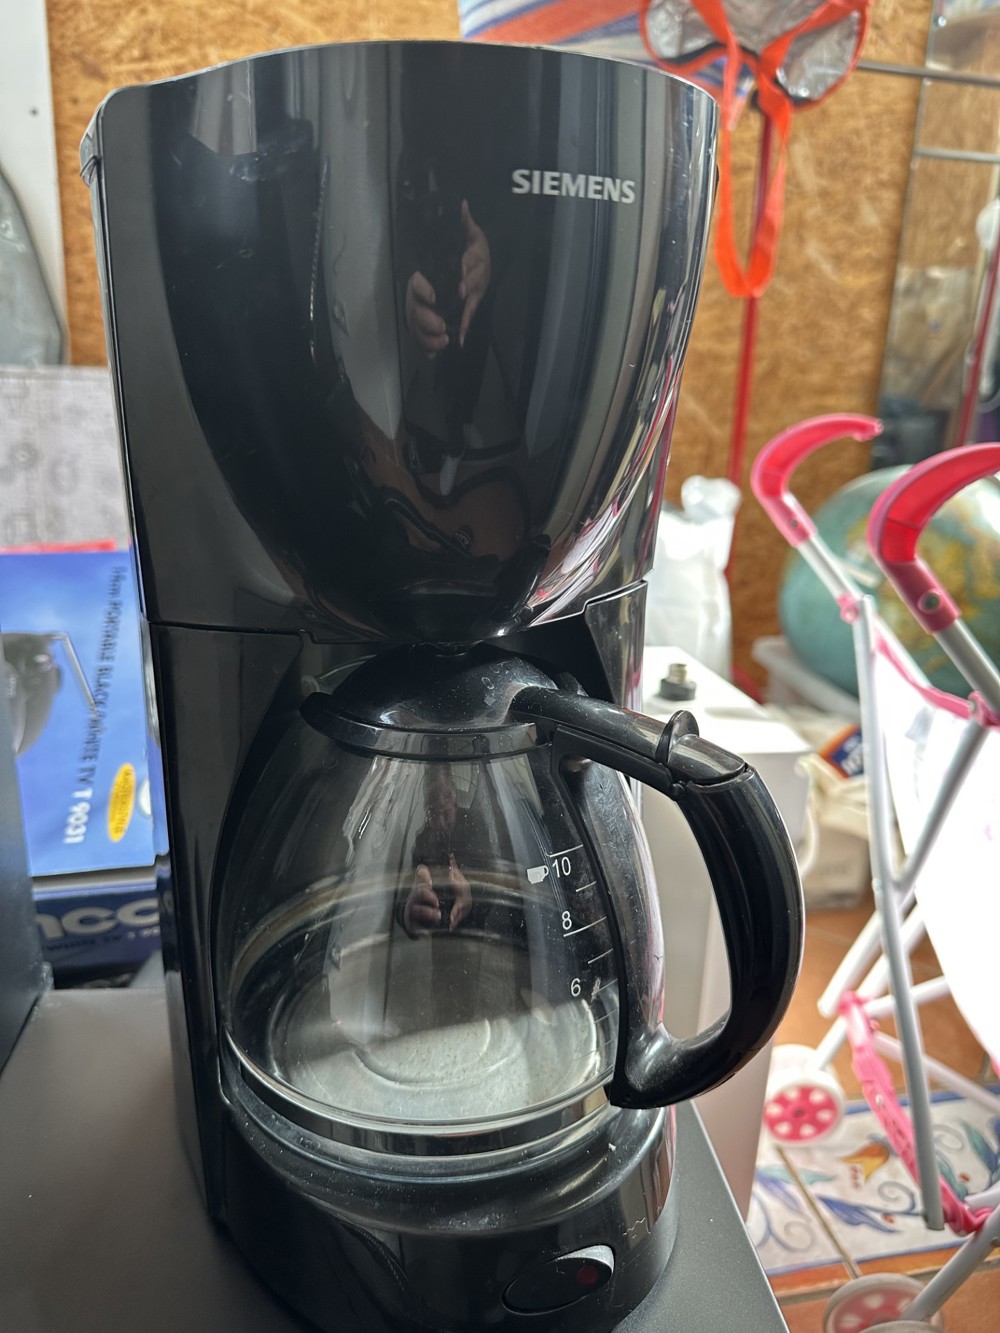 Kaffemaschine Siemens in Schwarz